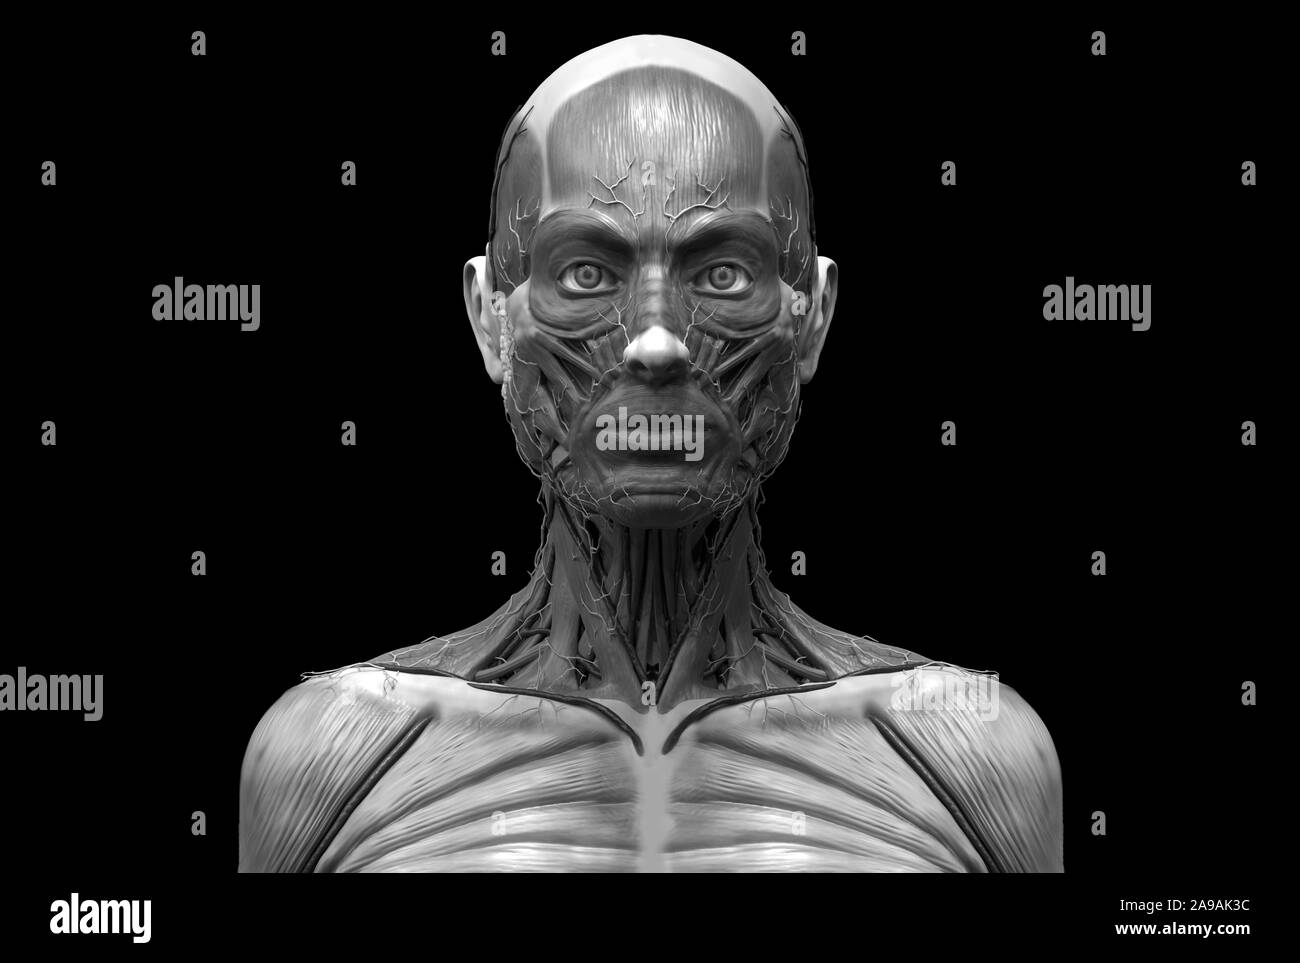 Corps humain anatomie d'une femme d'une structure musculaire, femelle vue de face Vue de côté et vue en perspective, 3D render Banque D'Images